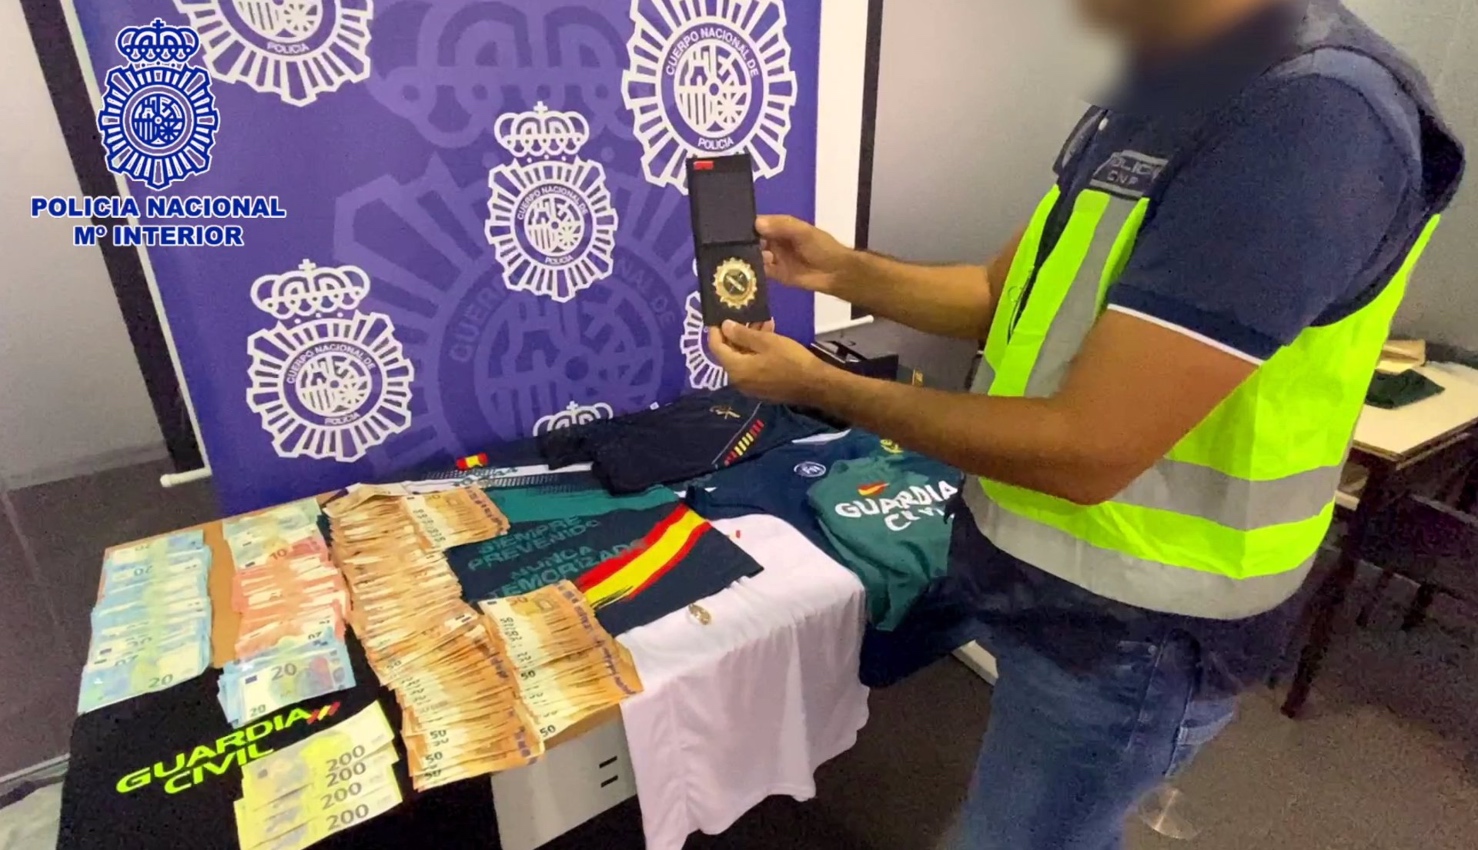 Dinero y objetos incautados en casa del detenido durante la investigación de la Policía Nacional.